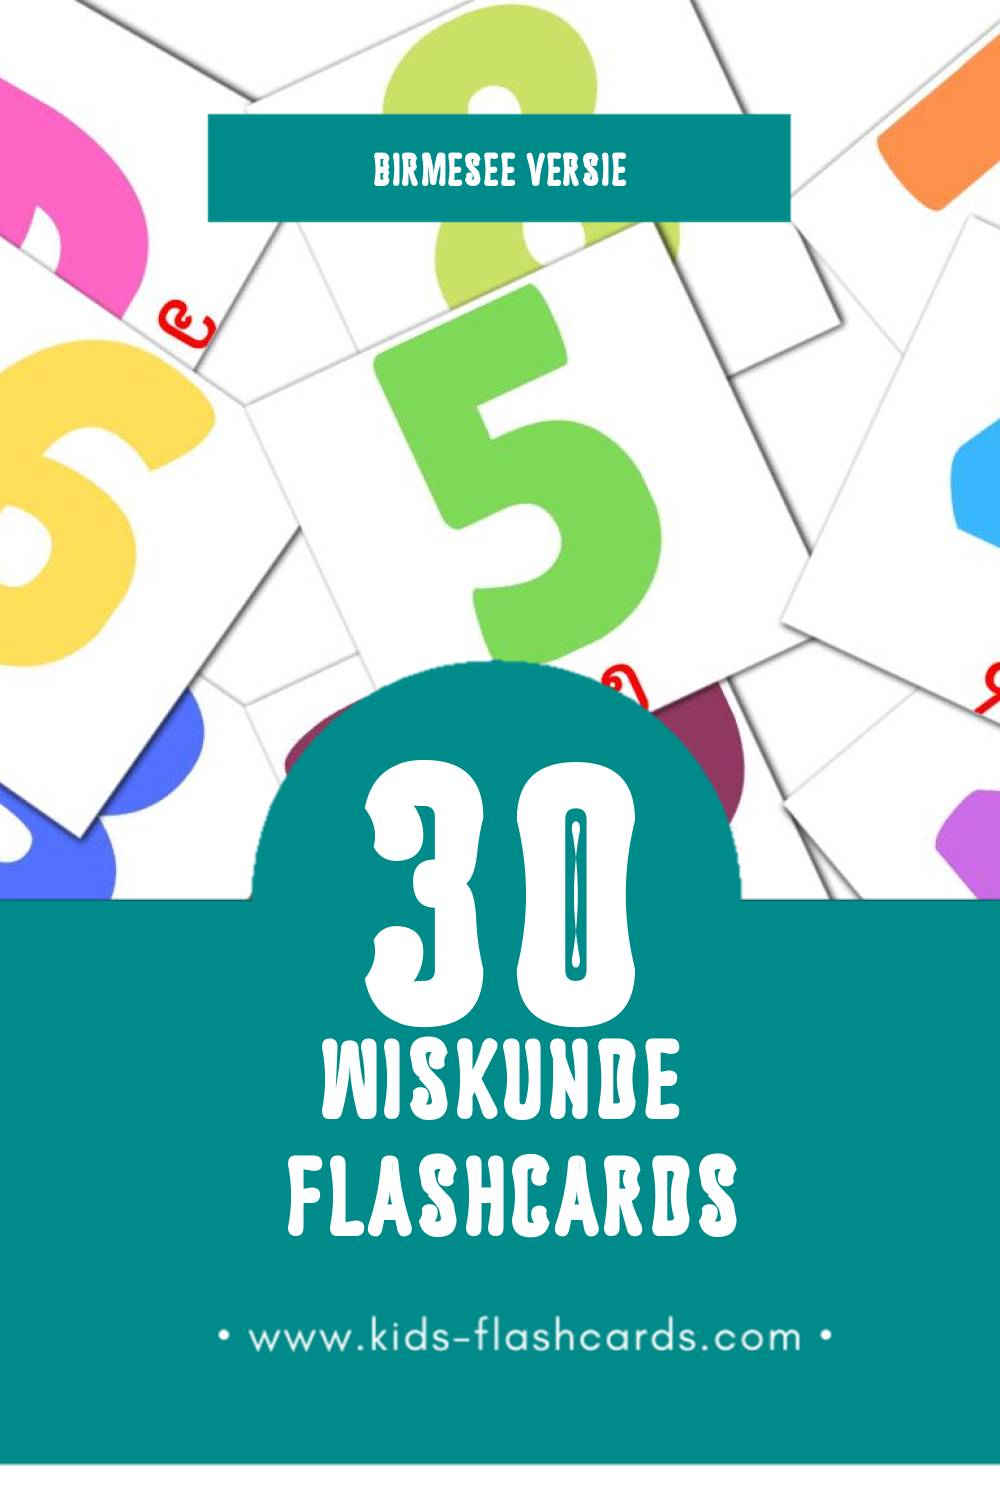 Visuele သခ်ၤာ Flashcards voor Kleuters (30 kaarten in het Birmese)